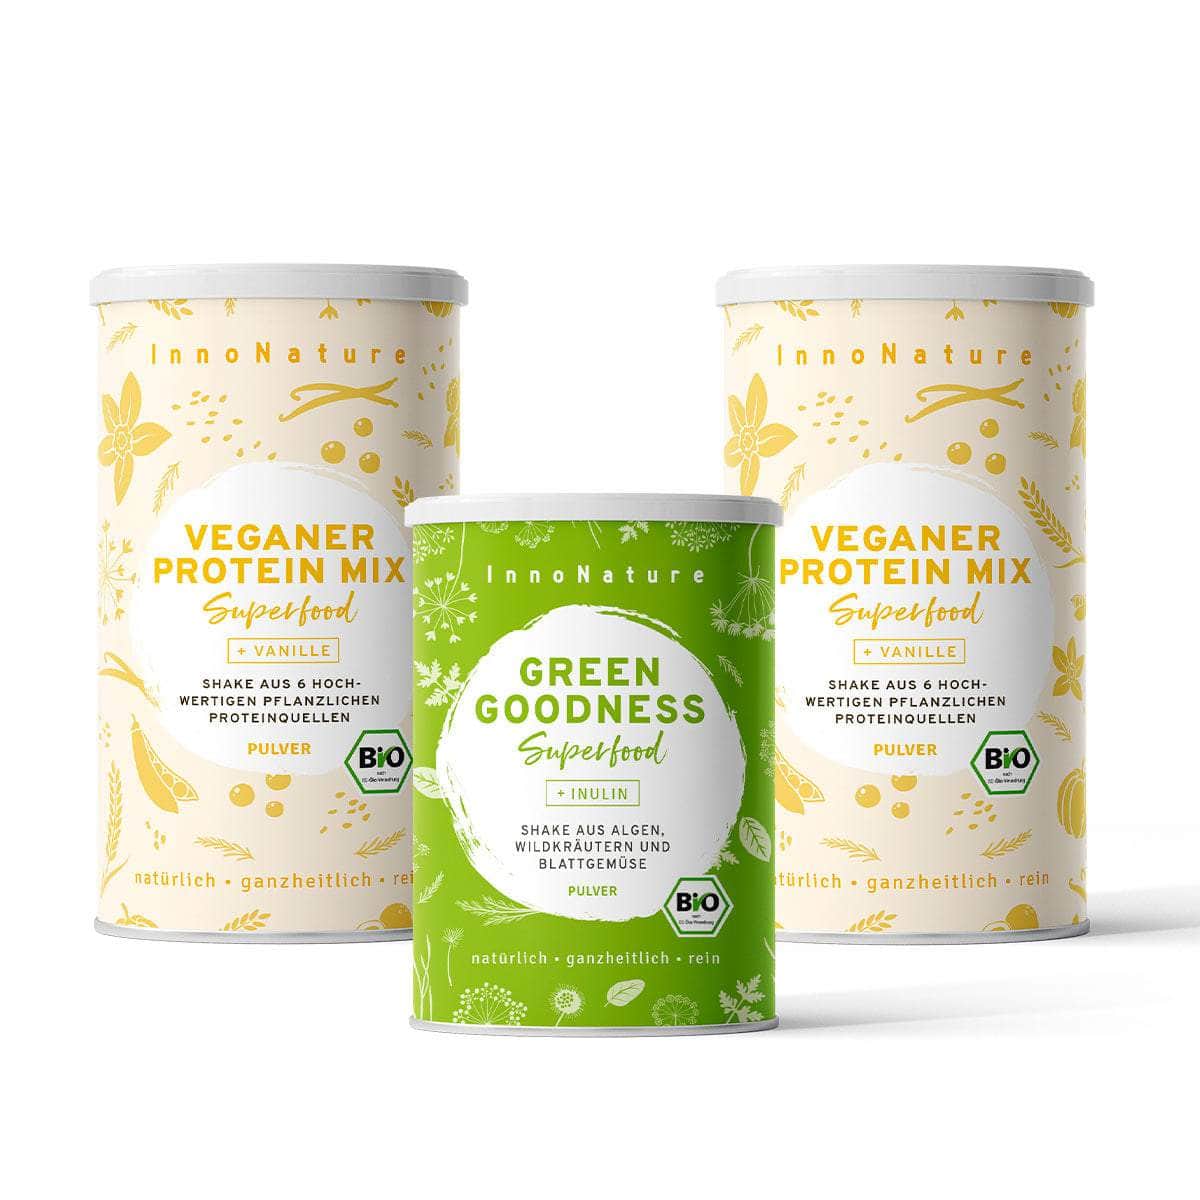 InnoNature Pakete 2x Veganer Protein Mix Vanille; 1x Green Goodness mutimbauch Shake Paket: Wähle Deine Lieblingskombi